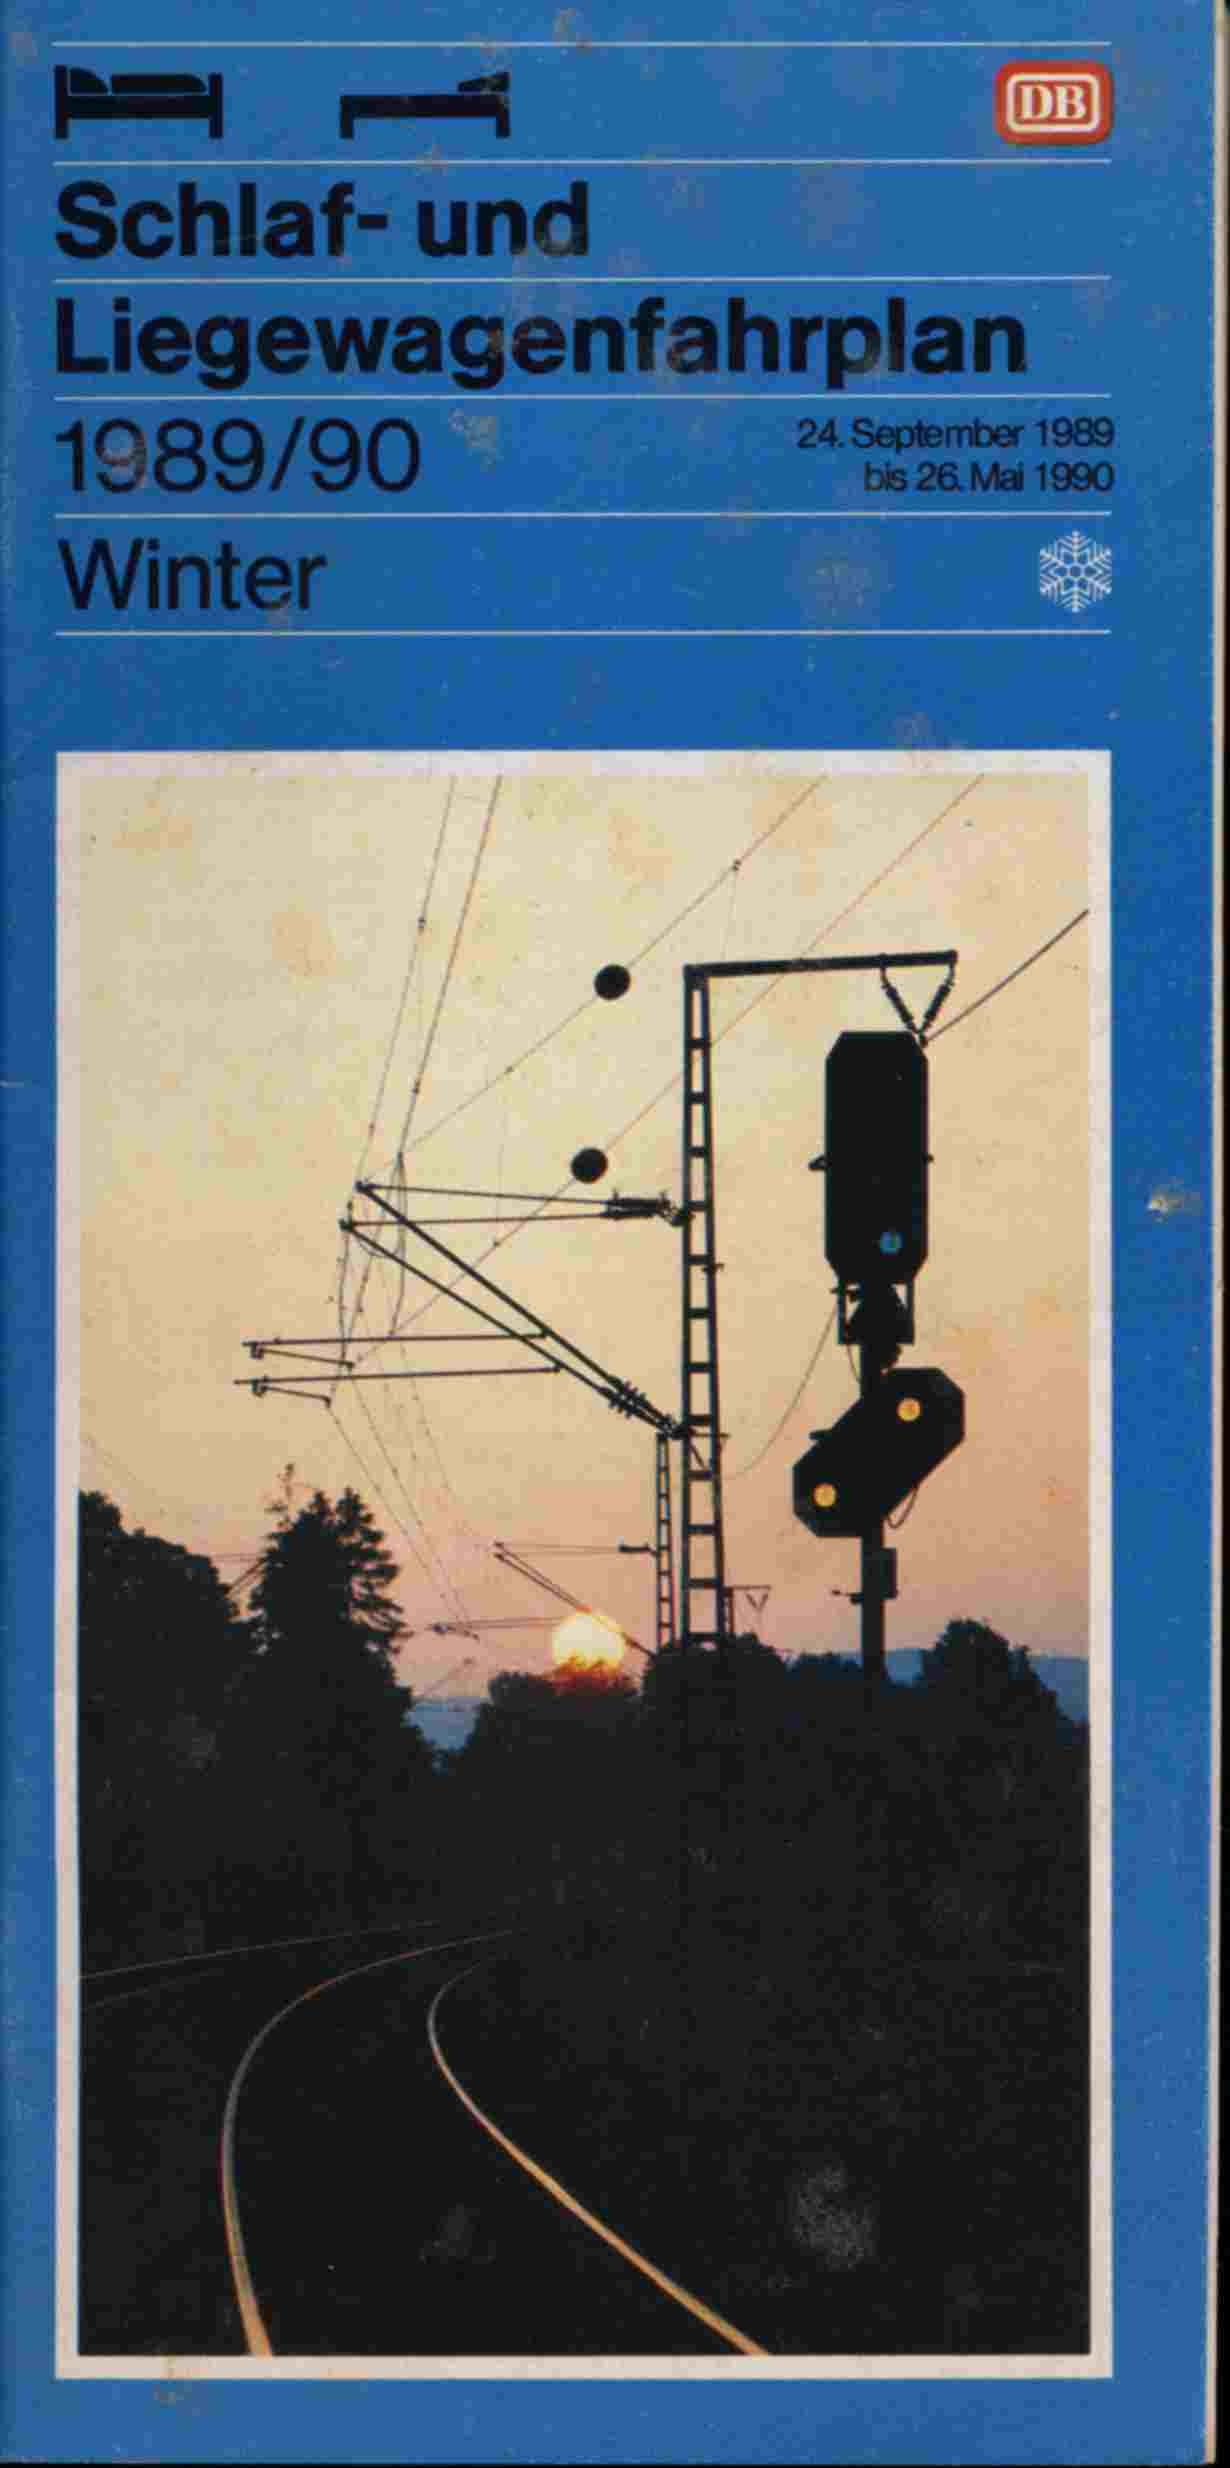 Deutsche Bahn (Hrg.)  Deutsche Bahn Schlafwagen- und Liegewagen-Fahrplan Winter 1989/90. 